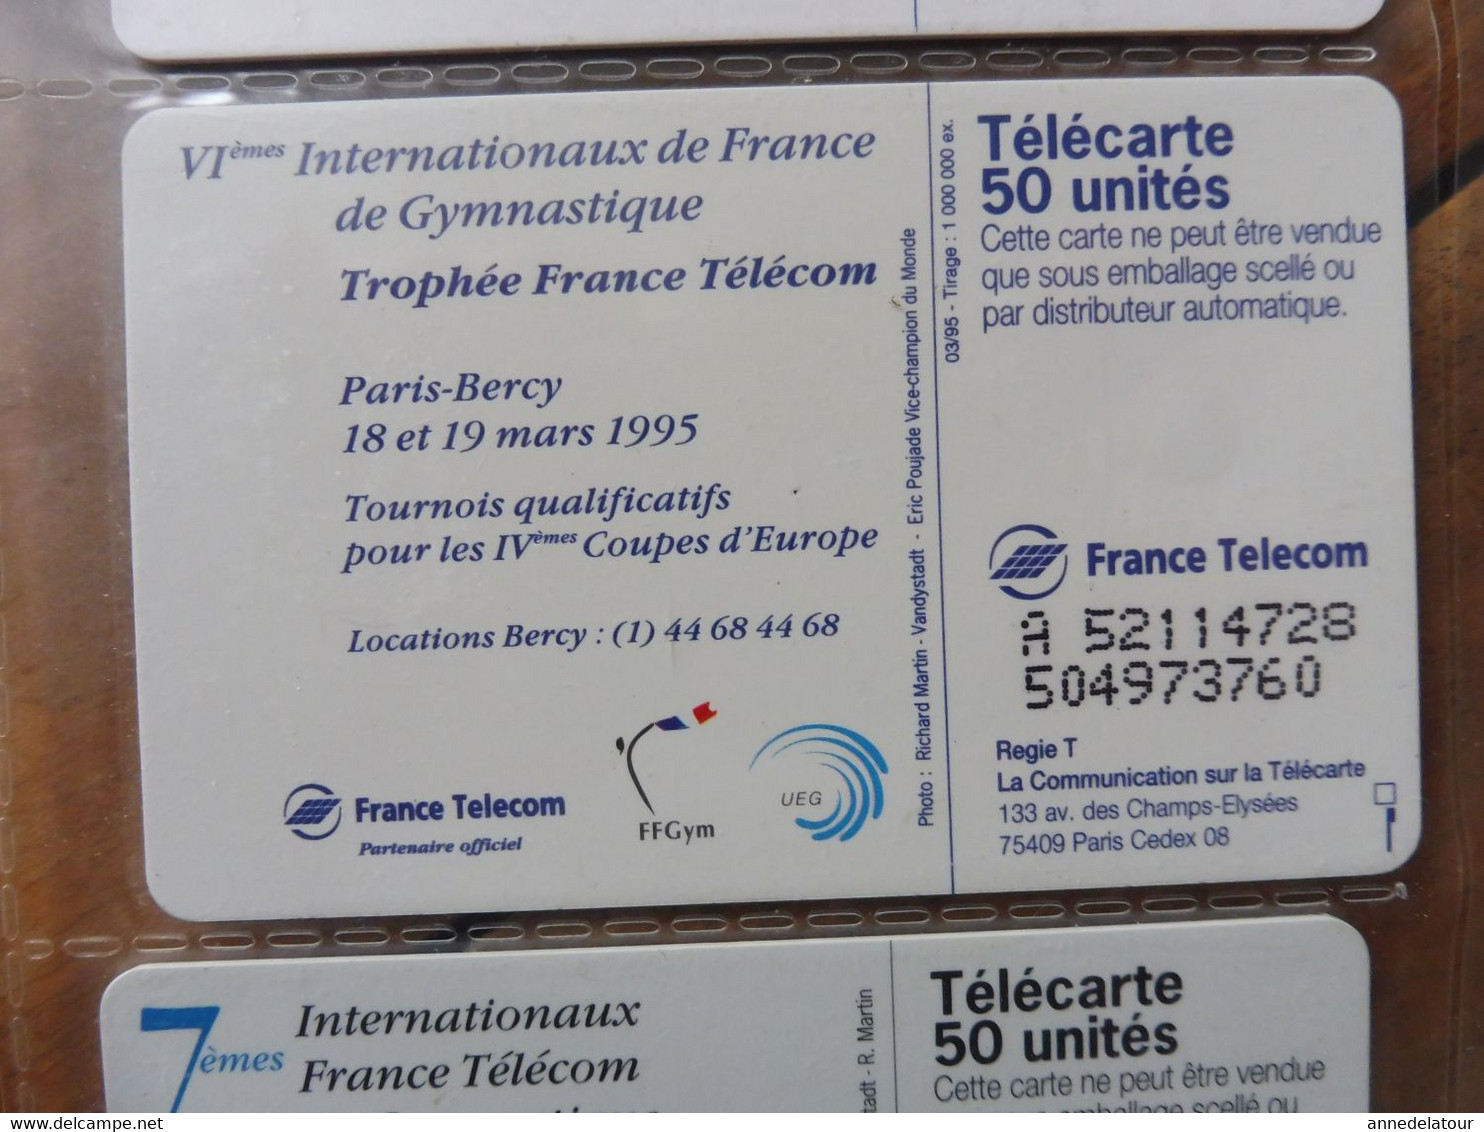 10 télécartes FRANCE TELECOM  - Gymnastique (Championnats du monde, 6e, 7e Internationaux, Une Passion, etc)